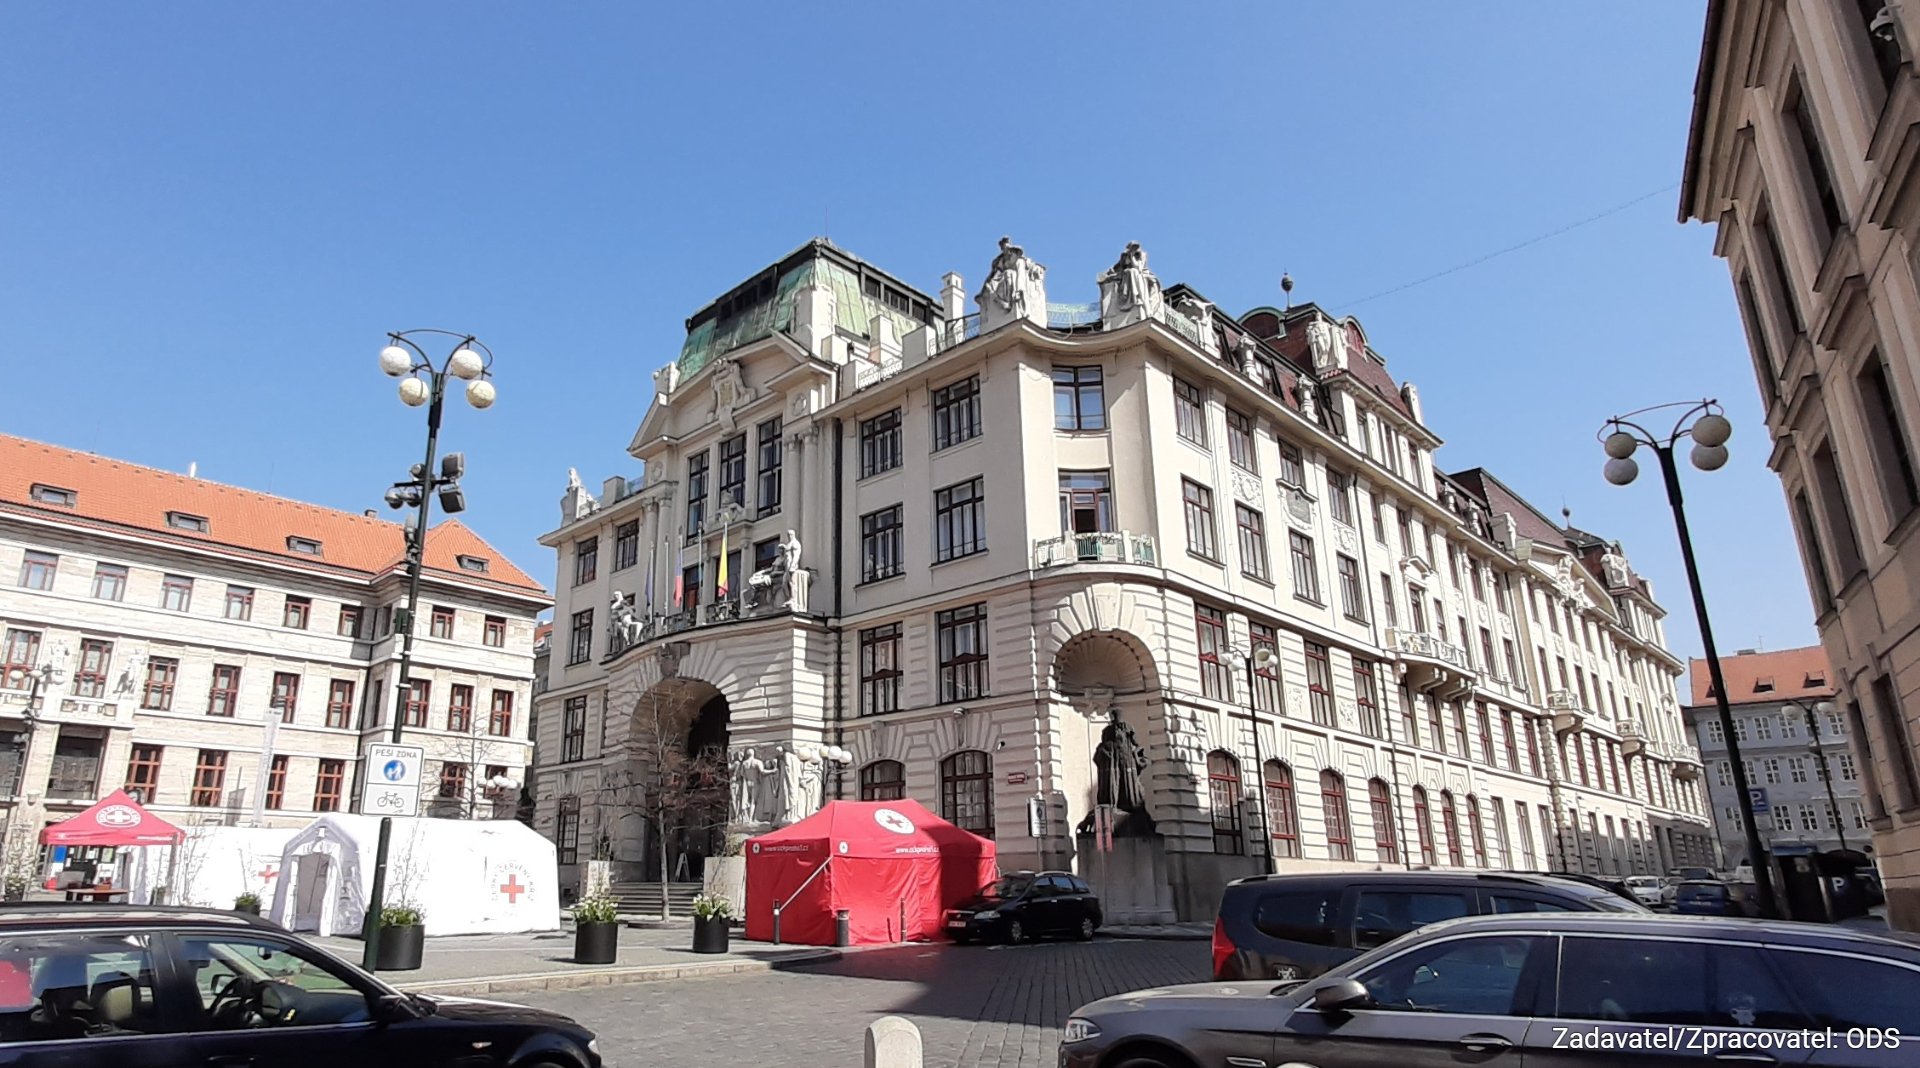 Praha je v klinické smrti a musí začít fungovat, opozice žádá primátora o svolání mimořádného zastupitelstva